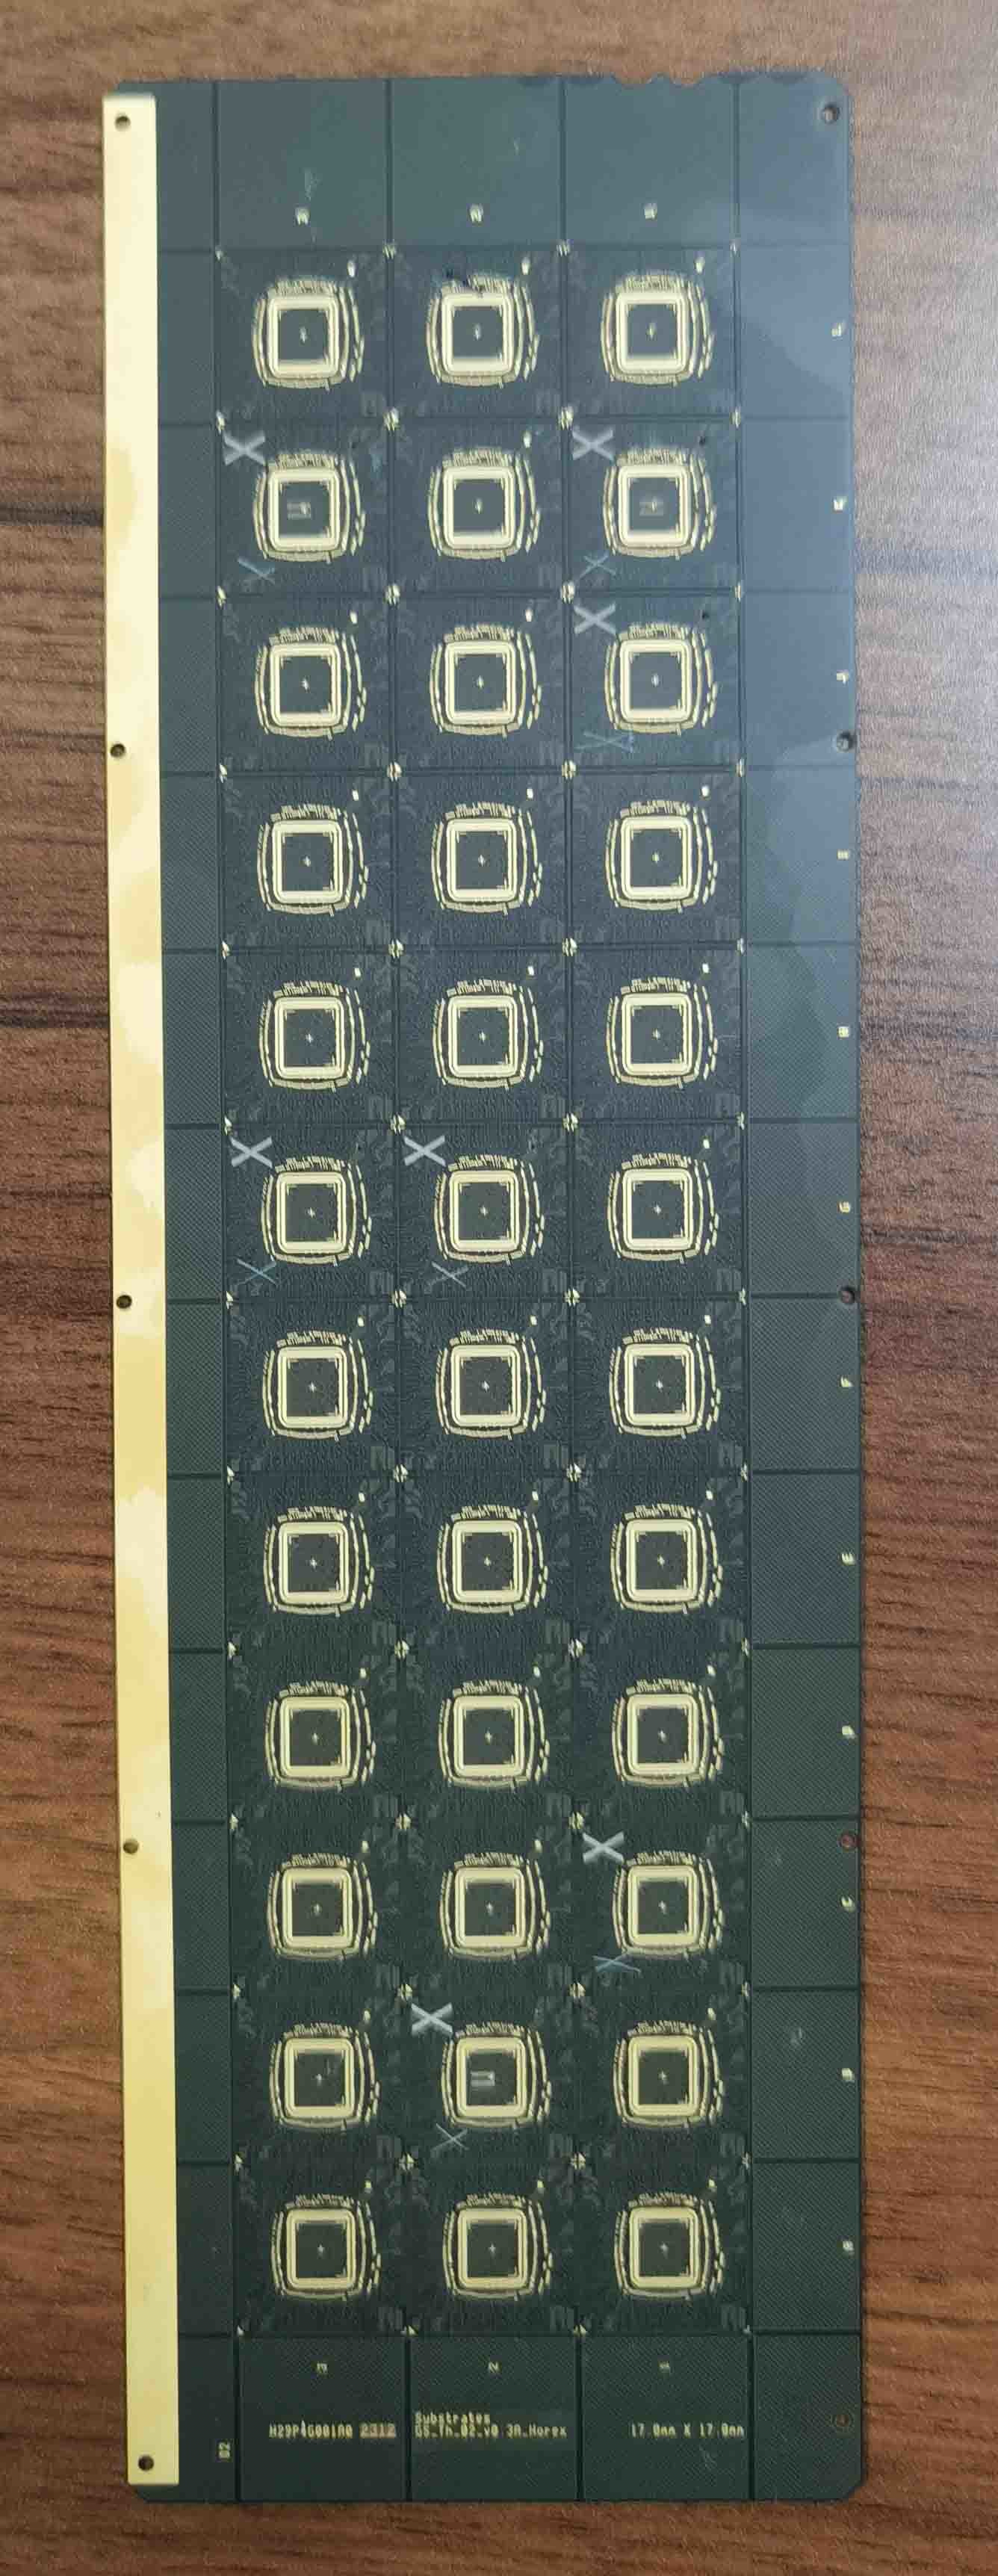 4层 0.3mm FCCSP封装类型封装基板